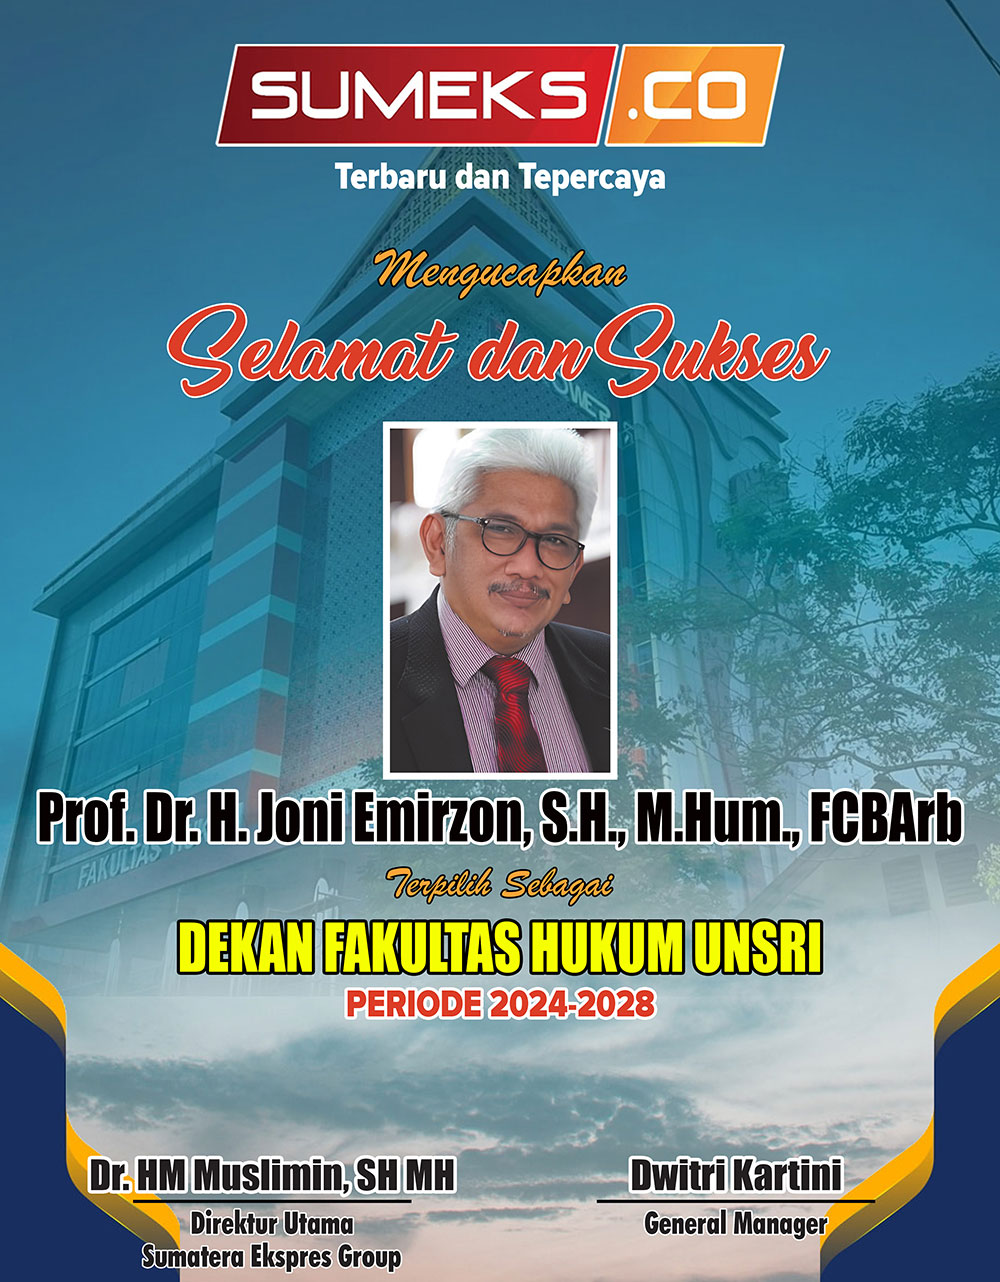 Sumeks.co Mengucapkan Selamat dan Sukses Prof Dr H Joni Emirzon, SH M.Hum FCBArb Dekan Fakultas Hukum Unsri